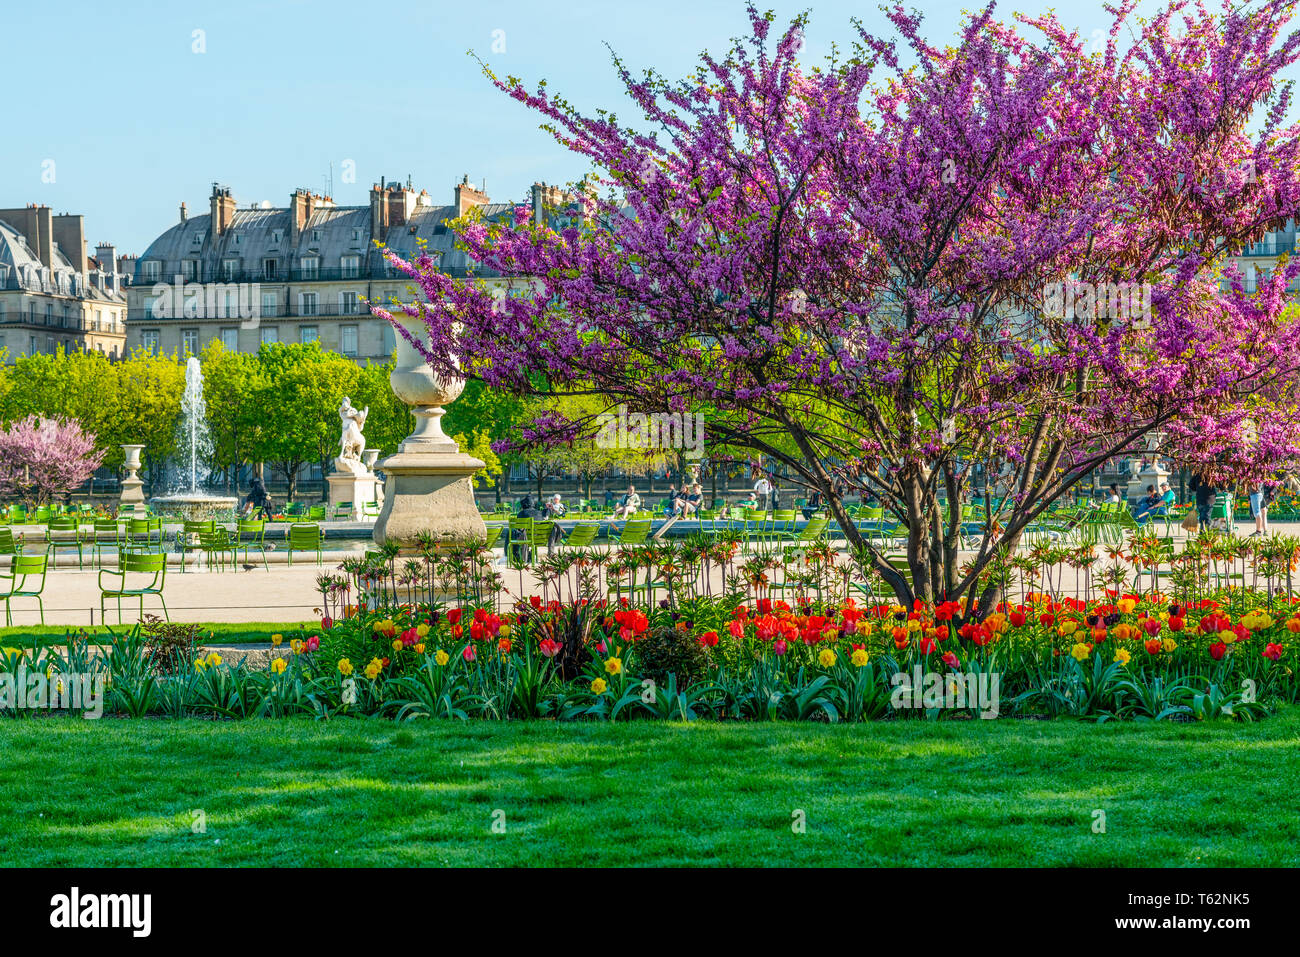 Blick auf den Park Jardin des Tuileries und dem Louvre mit Blumen, Statuen, Brunnen, und Kirschblüten im April - Frühling in Paris, Frankreich. Stockfoto